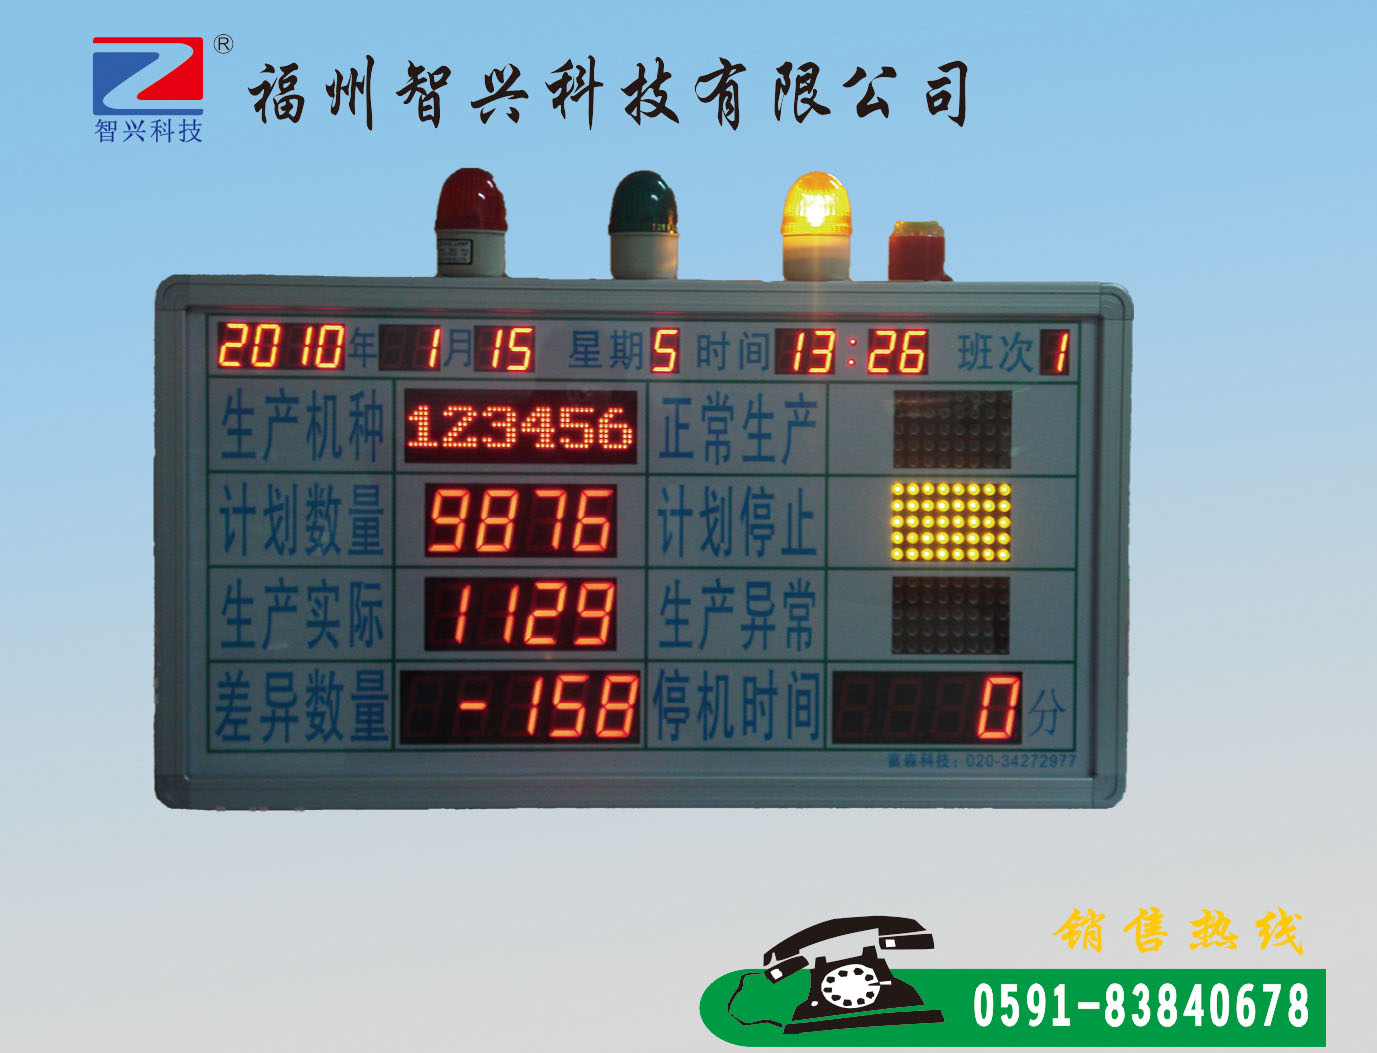 智兴科技公司_声誉好的LED求助系统公司|广东福州求助系统